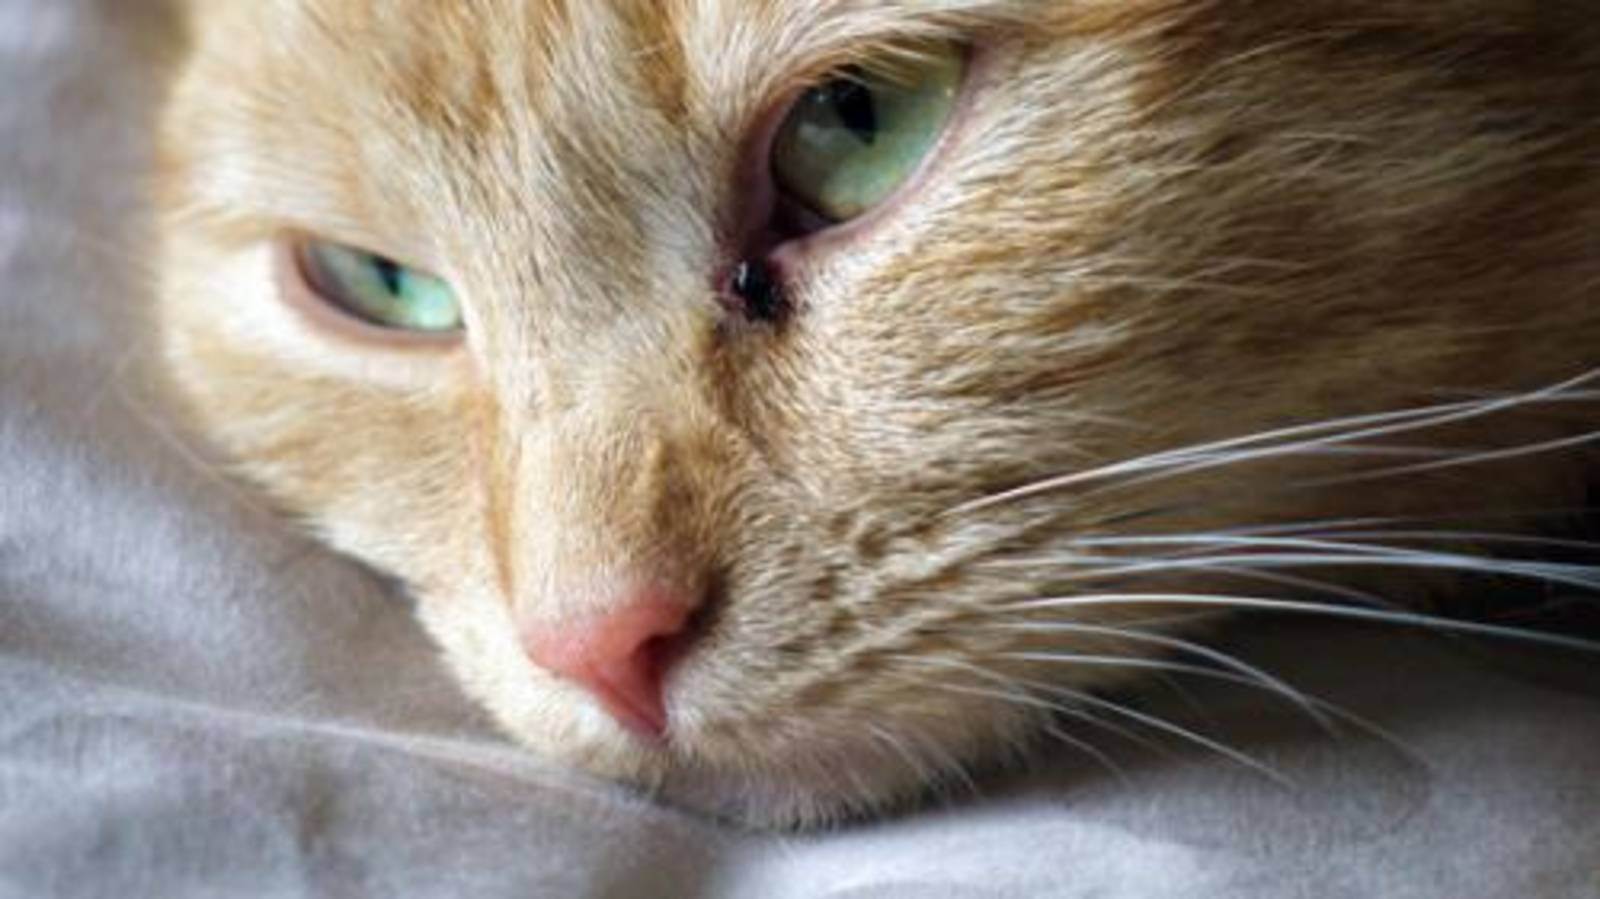 Кальцивироз у кошек: симптомы и лечение, профилактика, прогноз